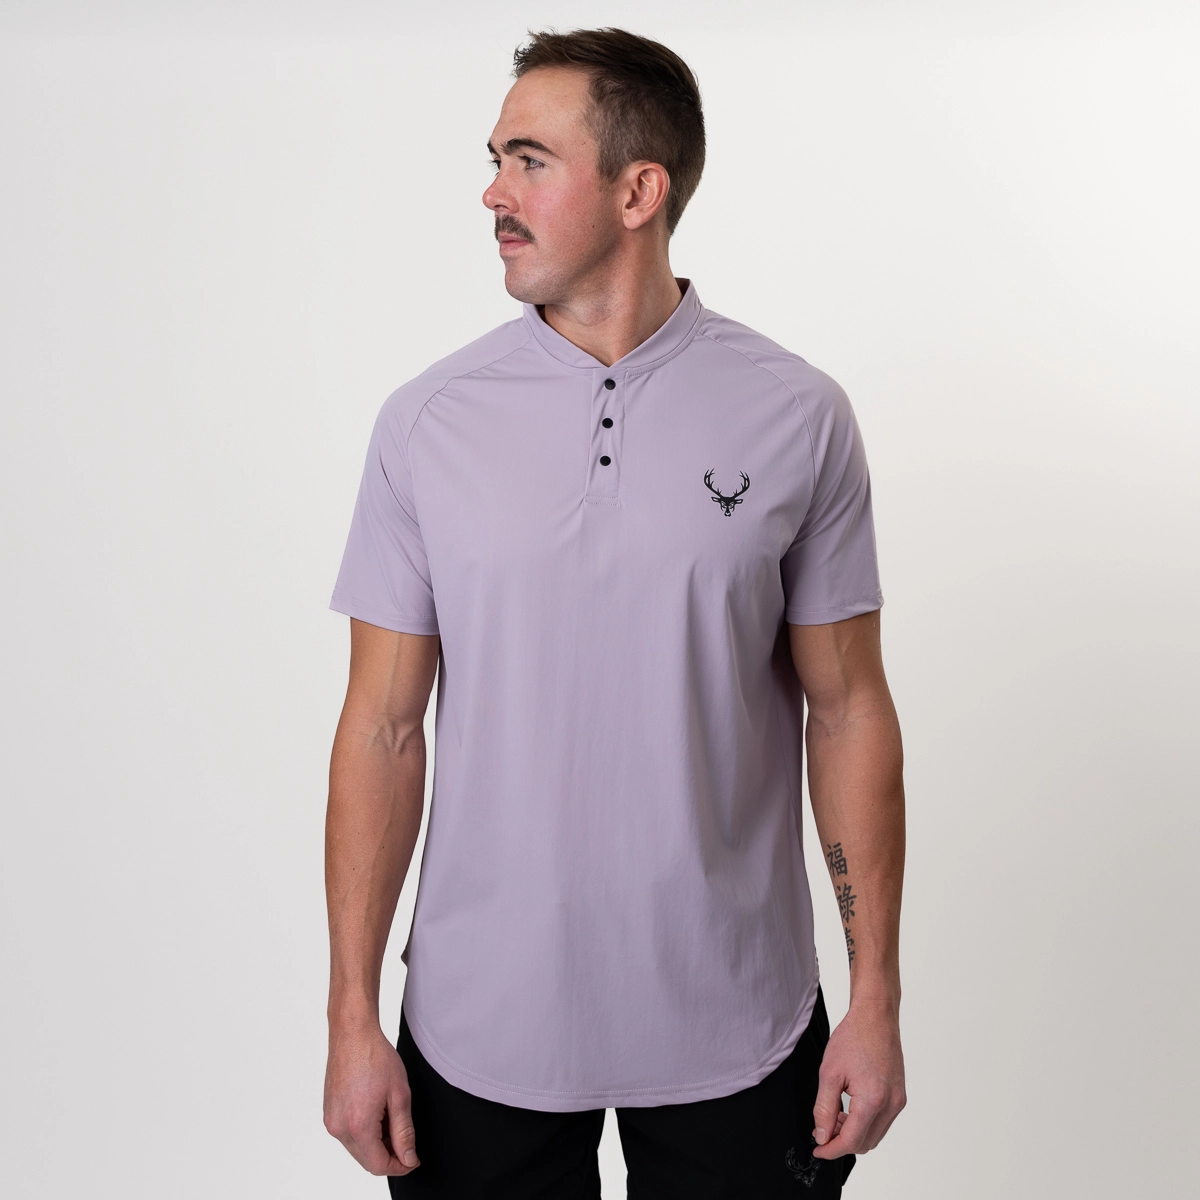 Mock Golf Shirt for Men